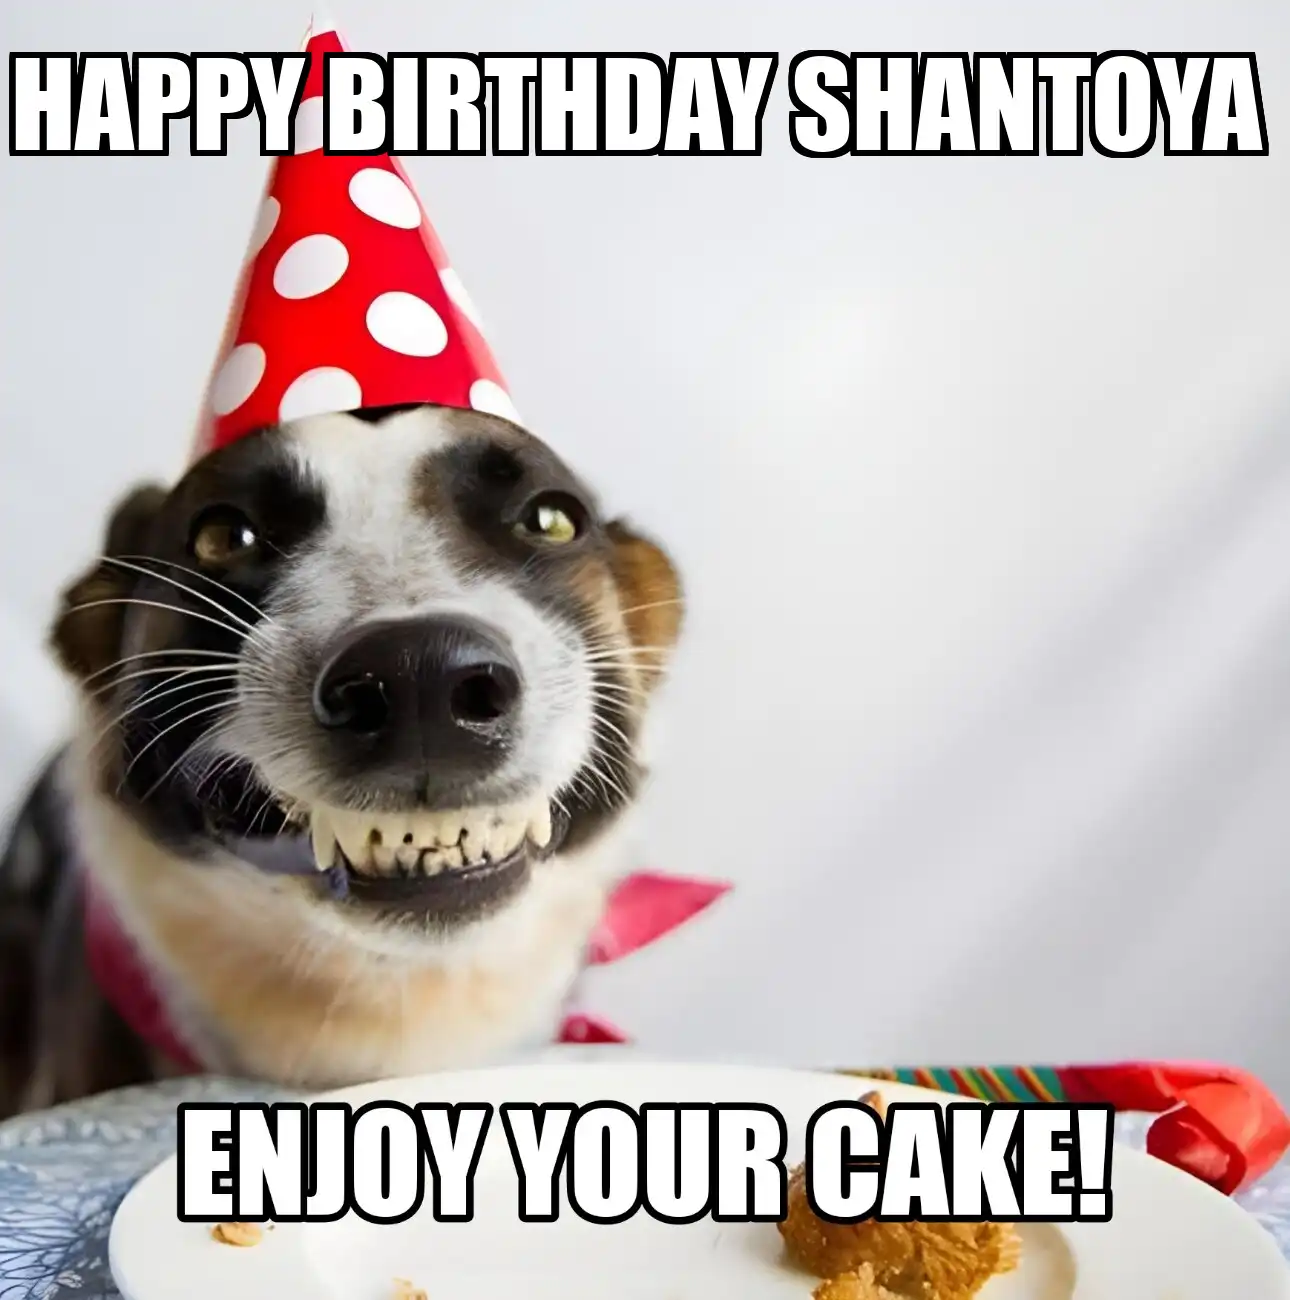 Happy Birthday Shantoya Enjoy Your Cake Dog Meme